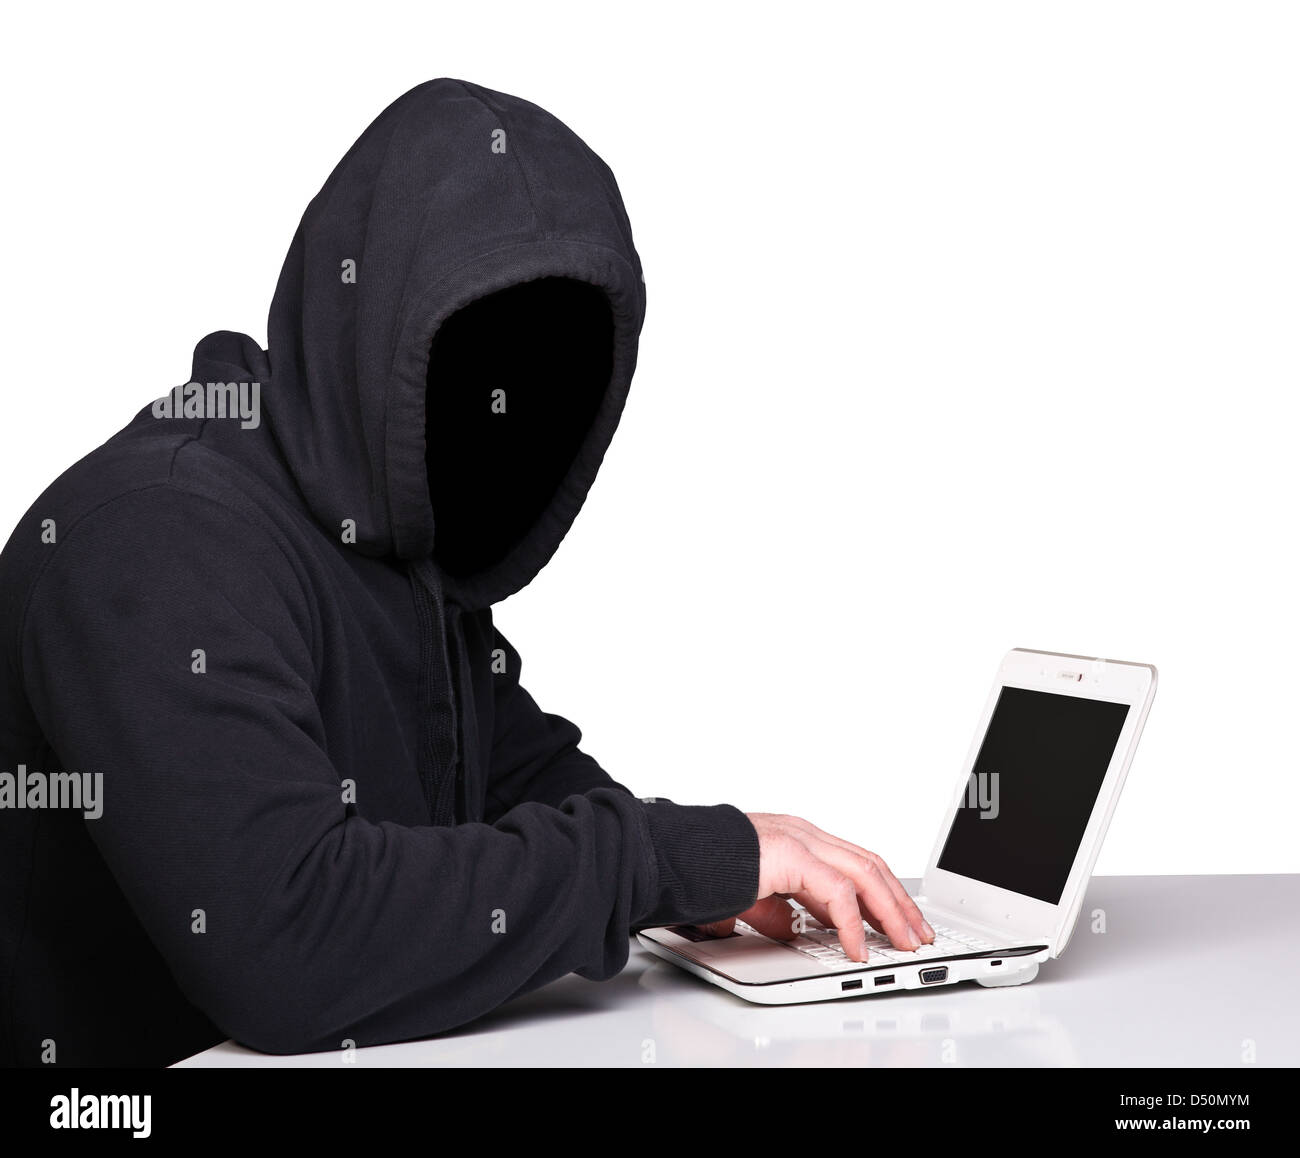 Hacker sans visage sur fond blanc Banque D'Images